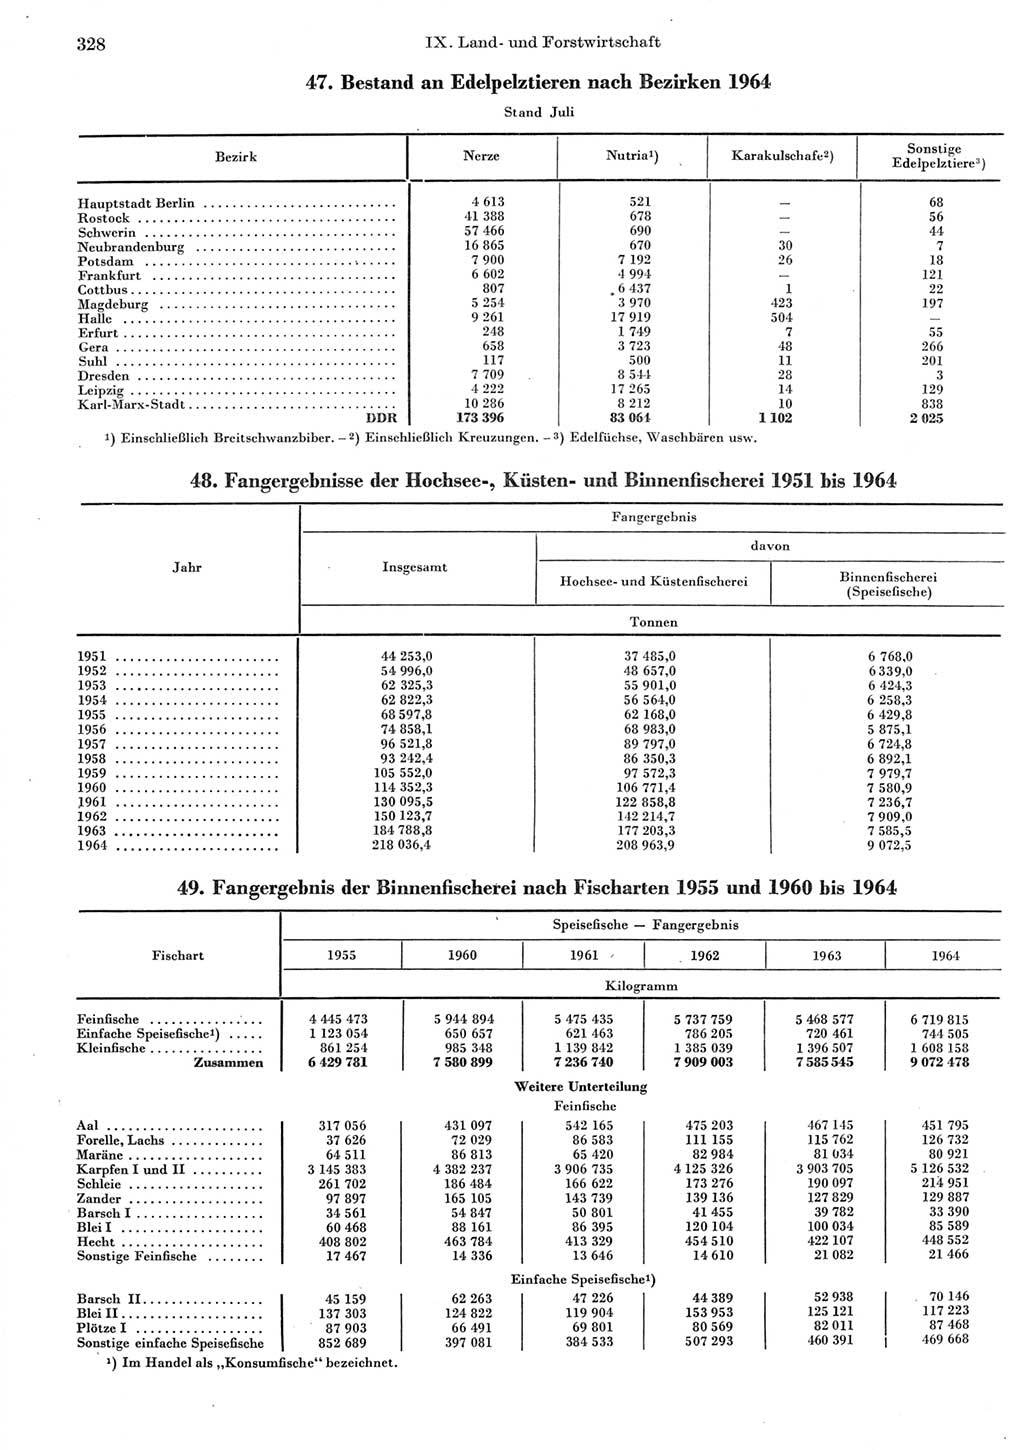 Statistisches Jahrbuch der Deutschen Demokratischen Republik (DDR) 1965, Seite 328 (Stat. Jb. DDR 1965, S. 328)